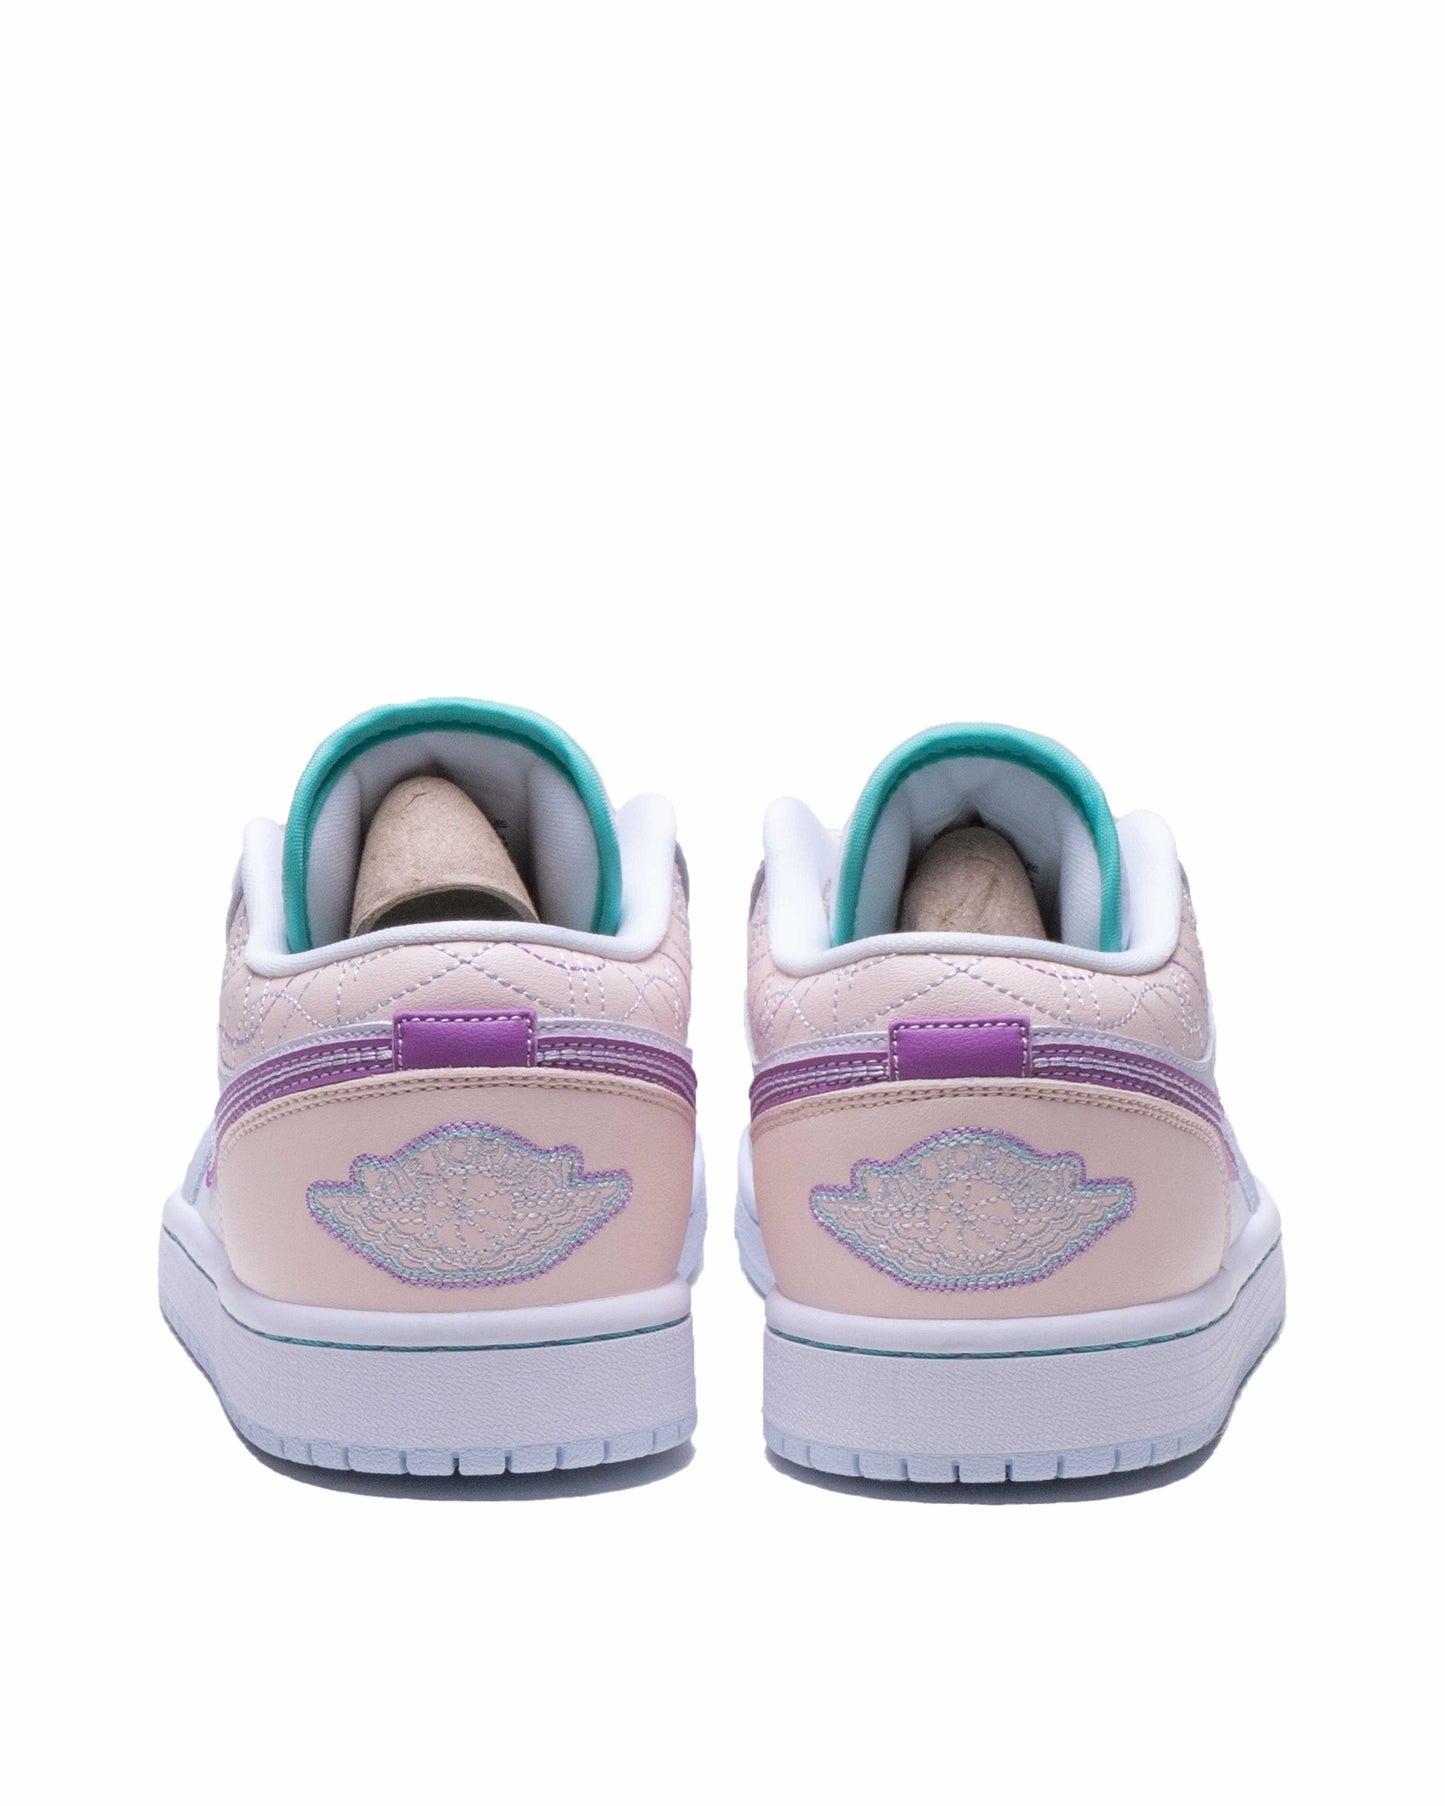 Sepatu Wanita AJ 1 Low WMNS Sashiko Multi-Color - 14284